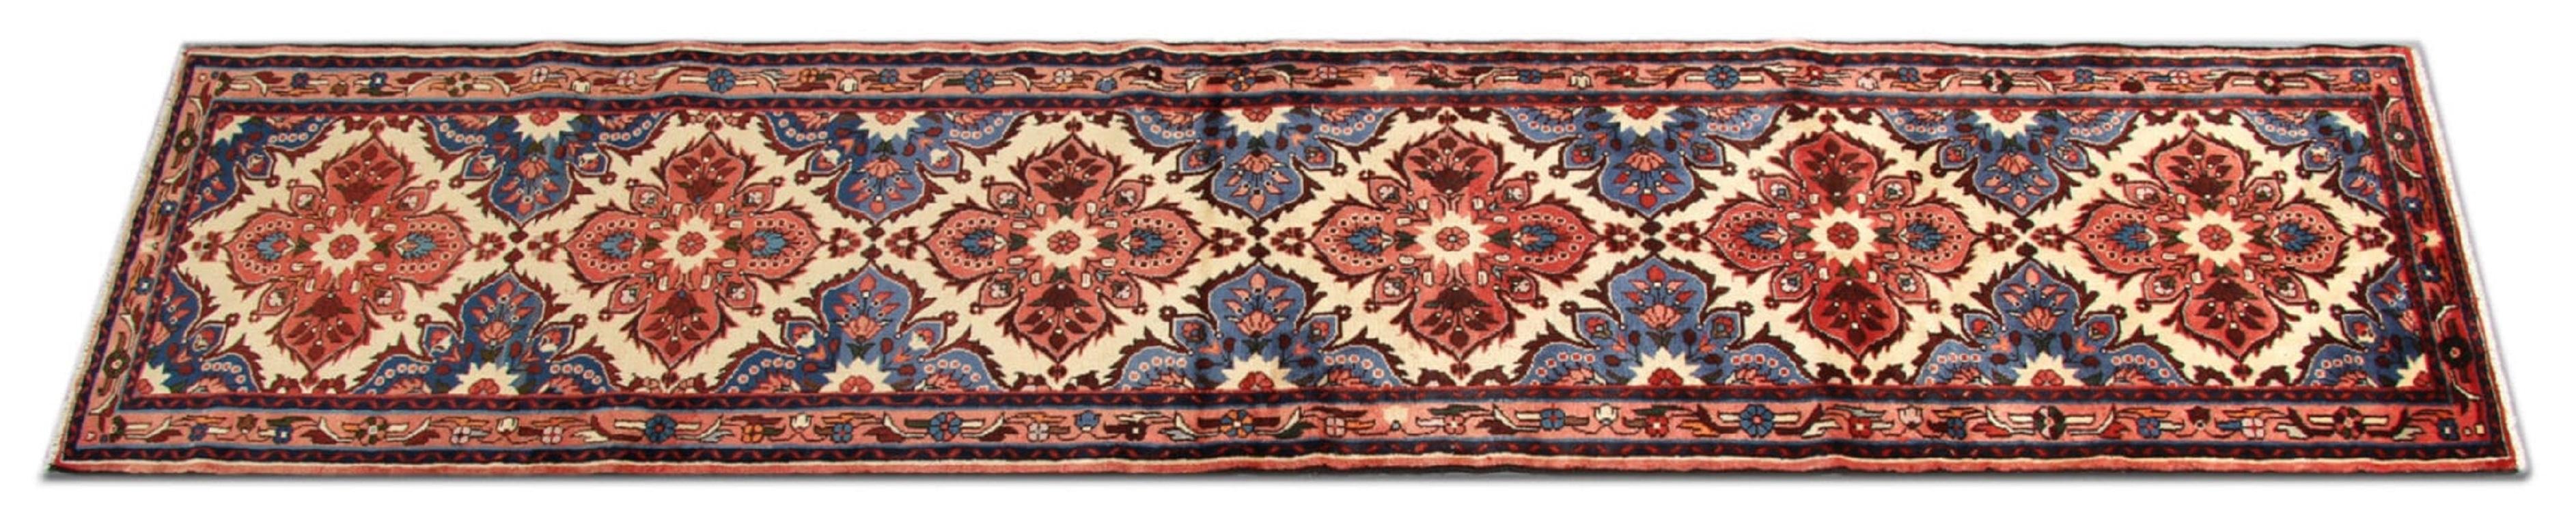 Hollywood Regency Vintage Carpet Runner, Blue Geometric Medallion Traditional Runner Rug For Sale